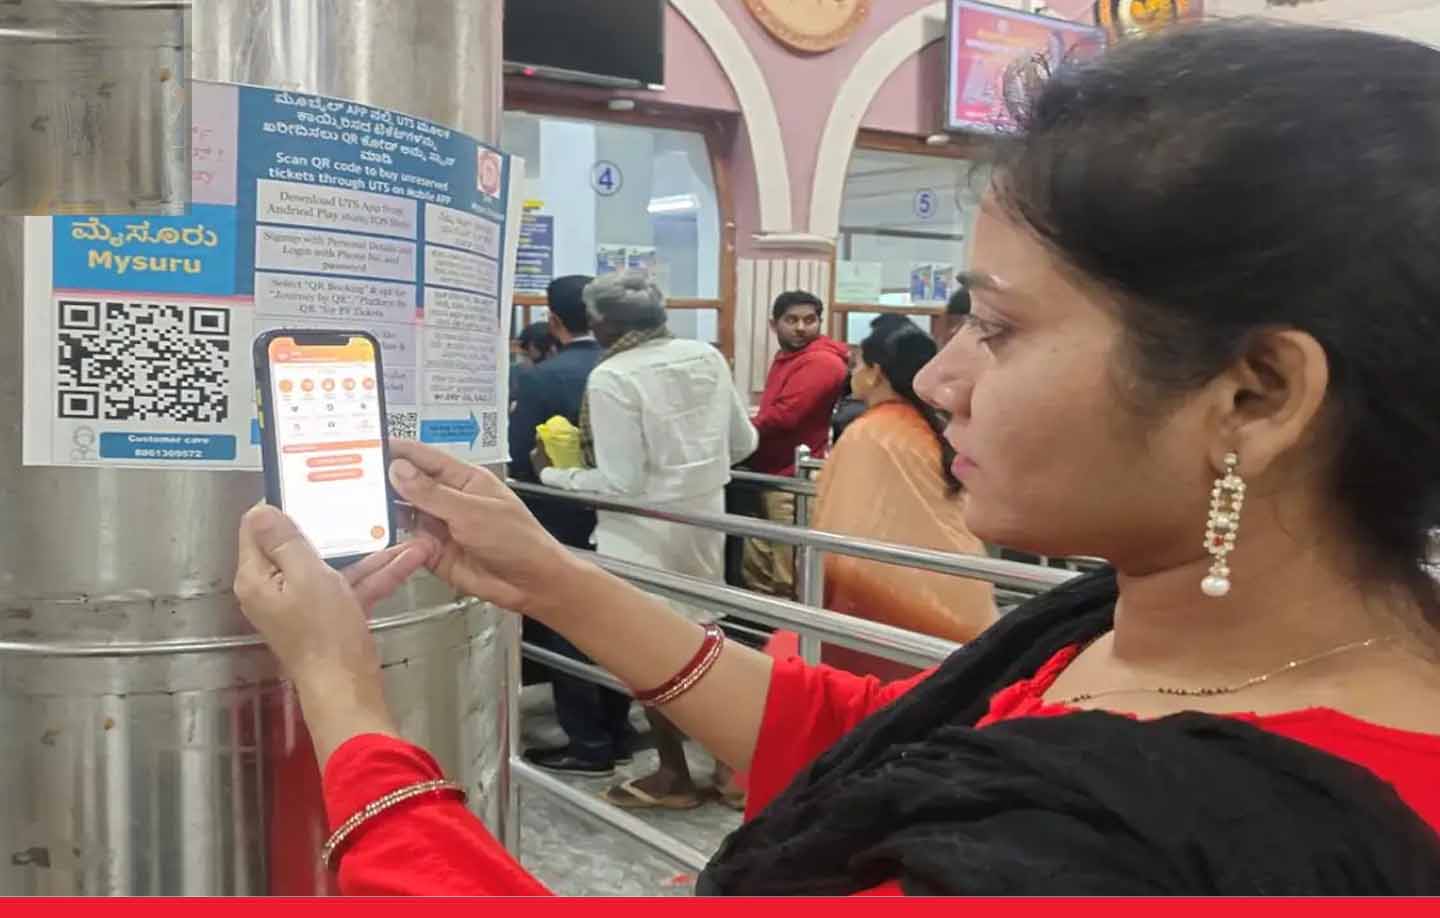 भारतीय रेलवे ने शुरू की क्यूआर कोड के माध्यम से प्लेटफ़ॉर्म टिकट खरीदने की सुविधा